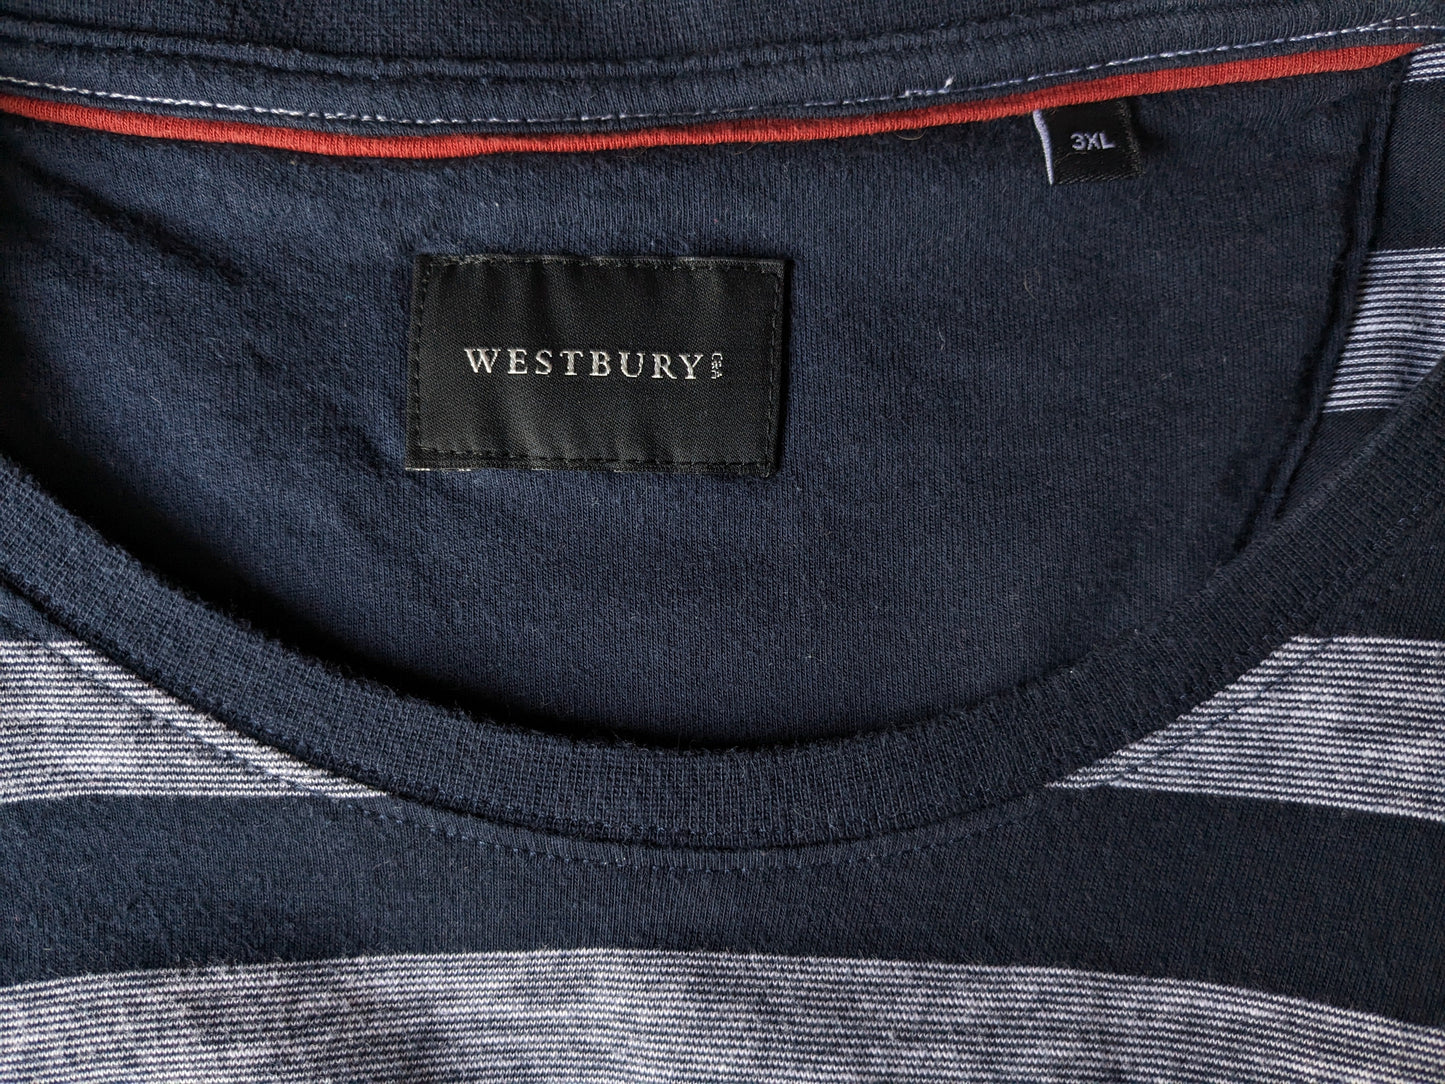 Camicia Westbury. Strisce grigio blu. Dimensione 3xl / xxxl.